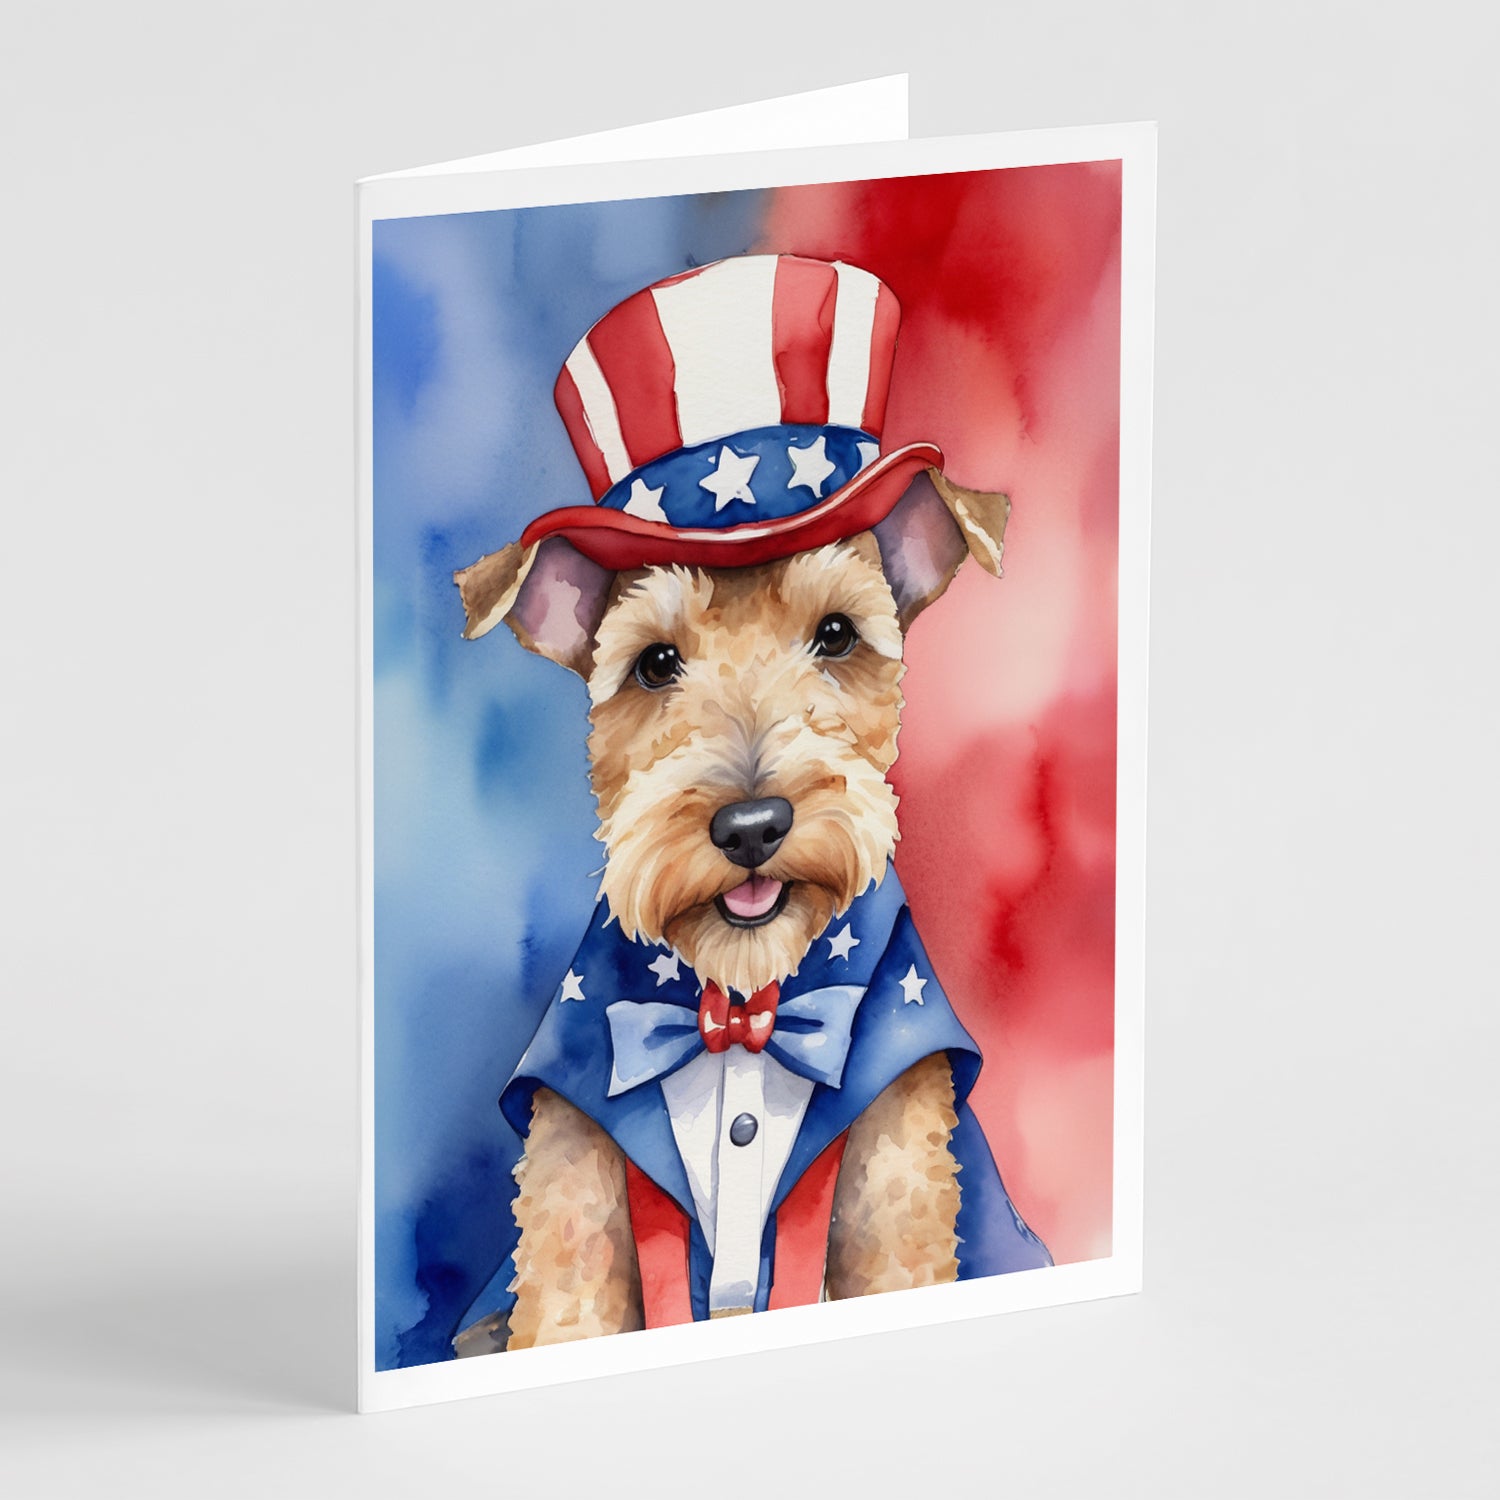 Buy this Lakeland Terrier Patriotic American Greeting Cards Pack of 8